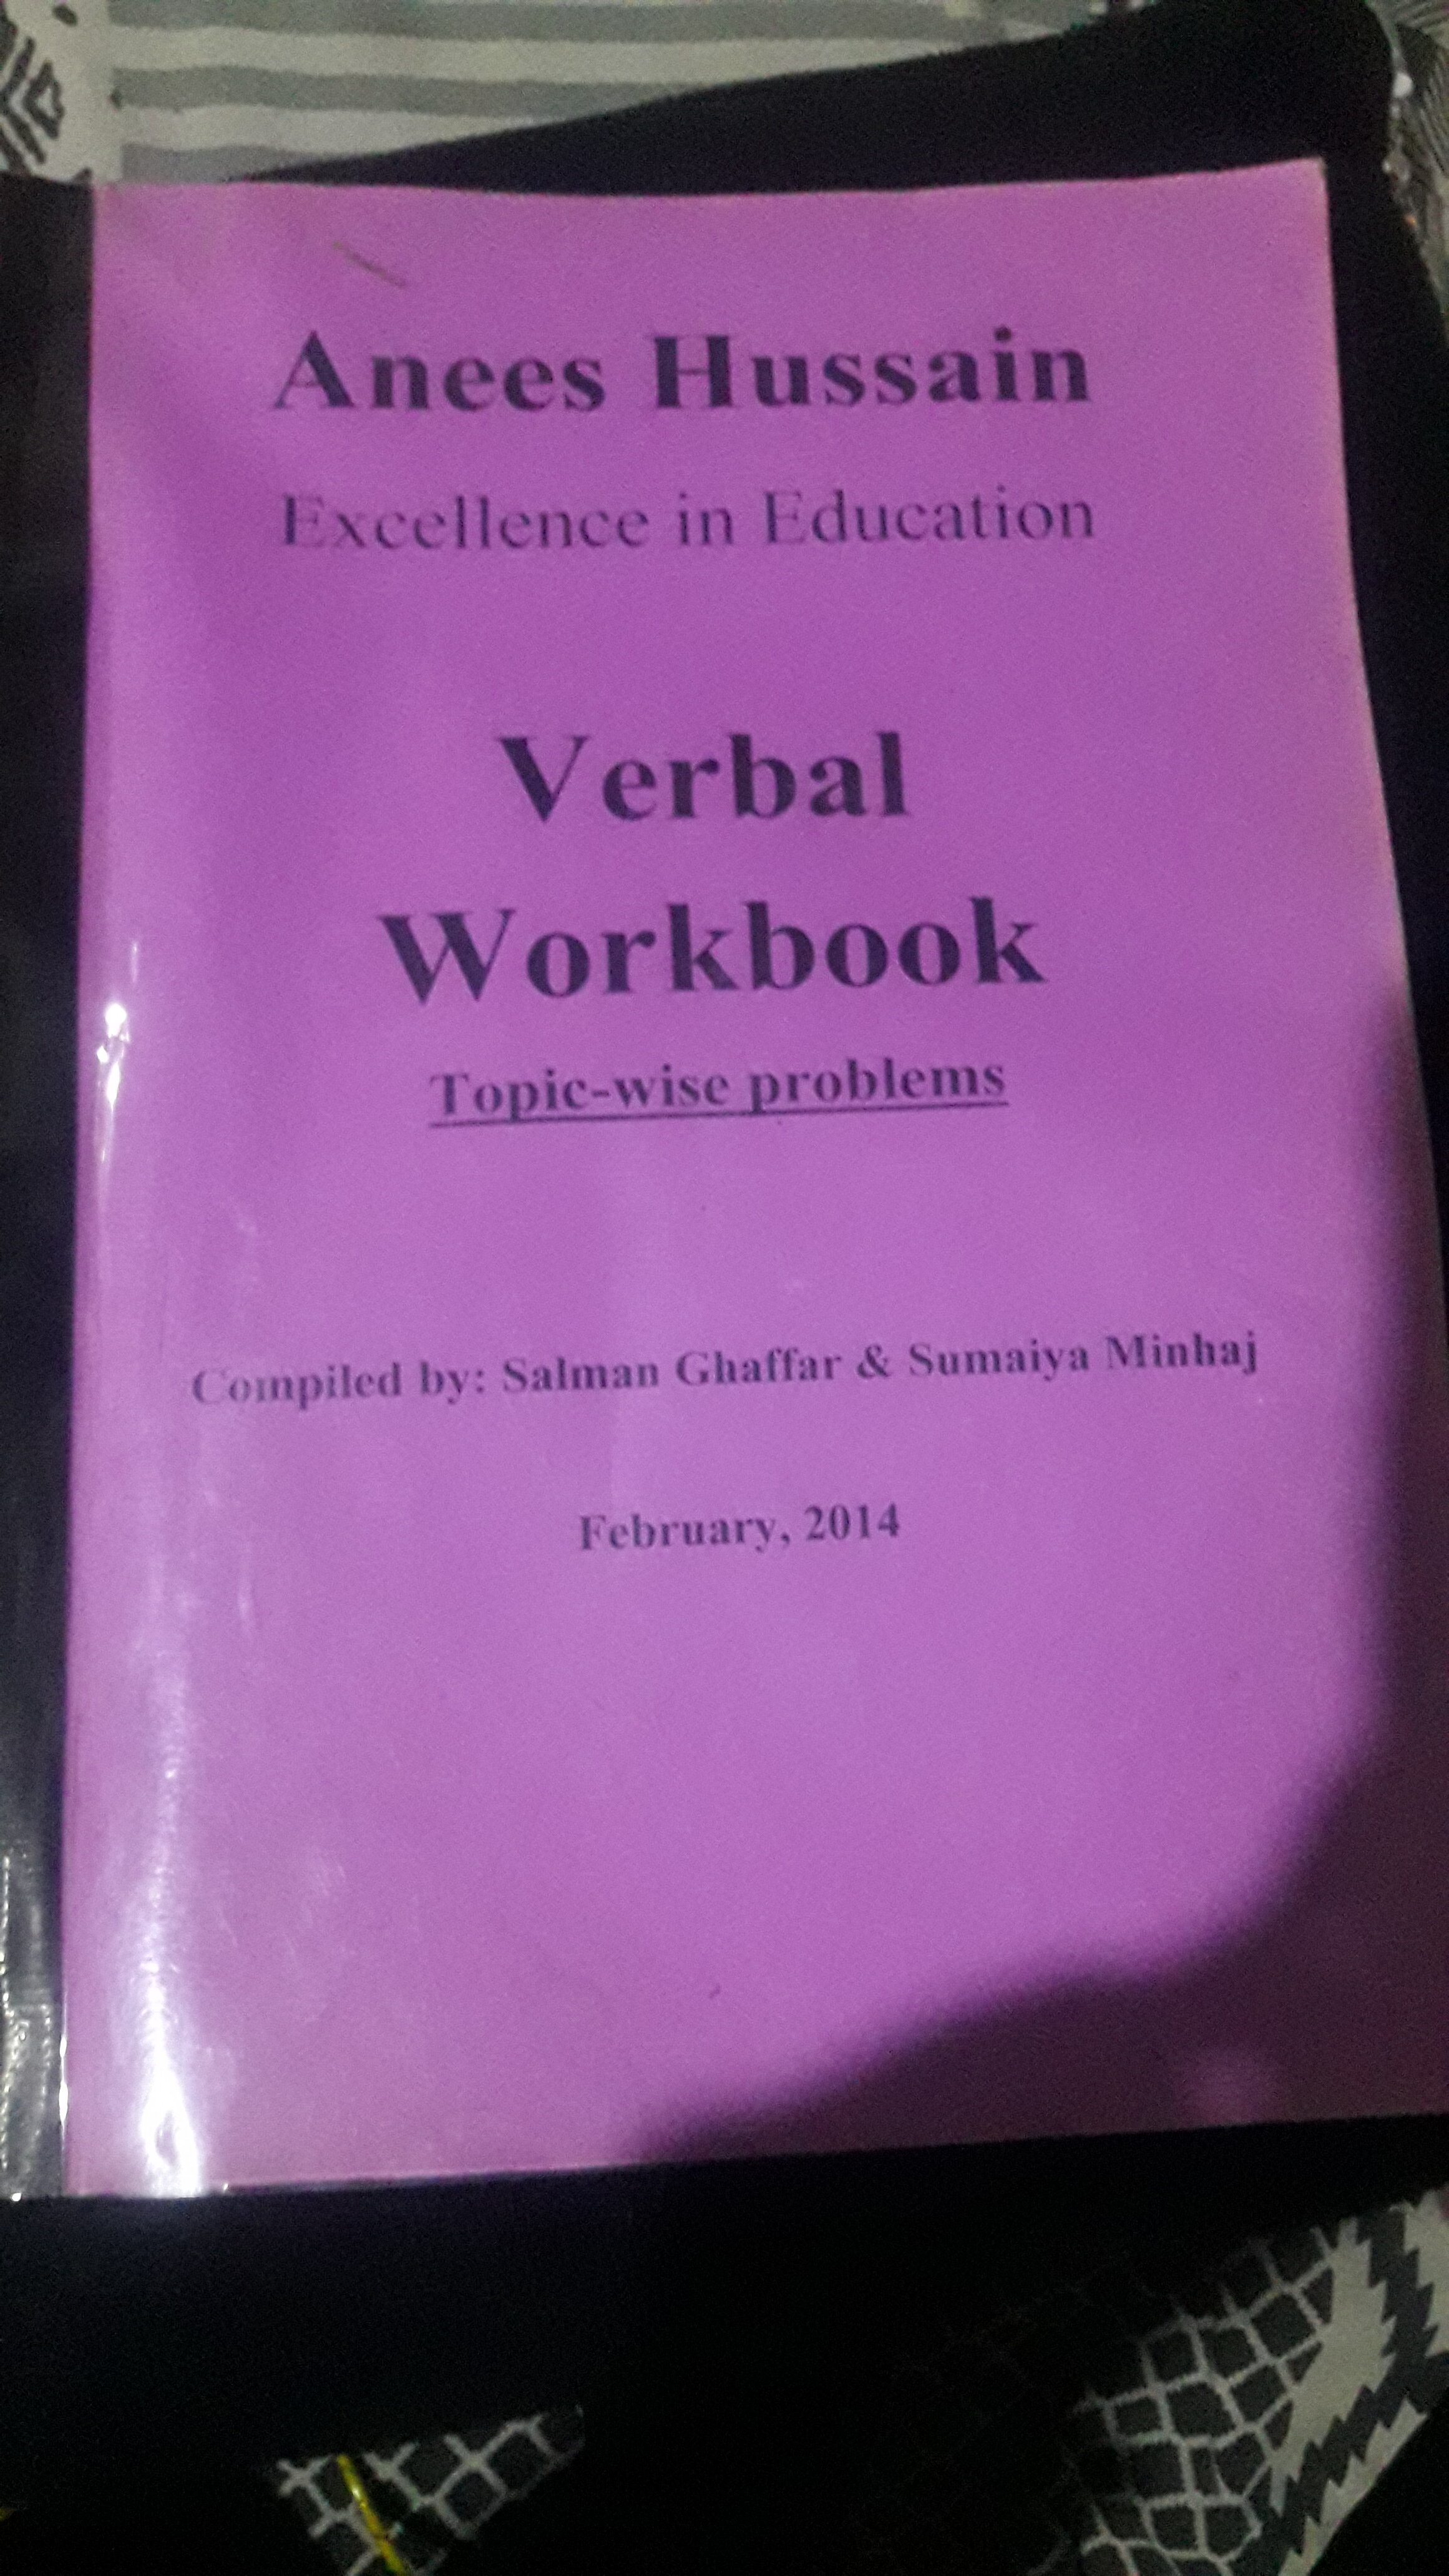 verbal workbook